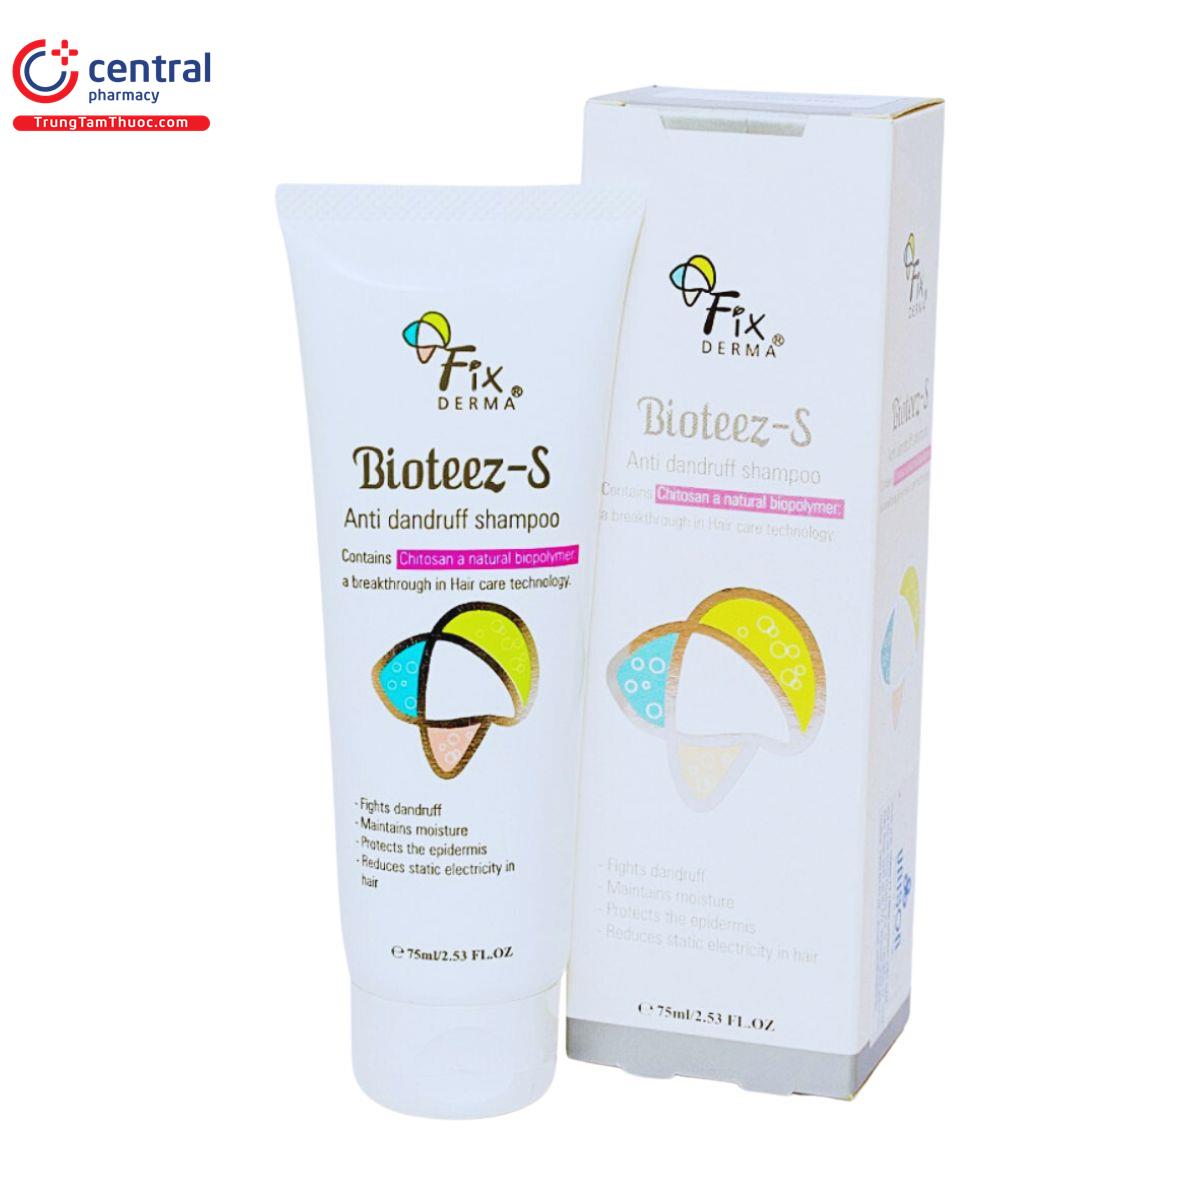 bioteez s shampoo 75ml 7 P6425